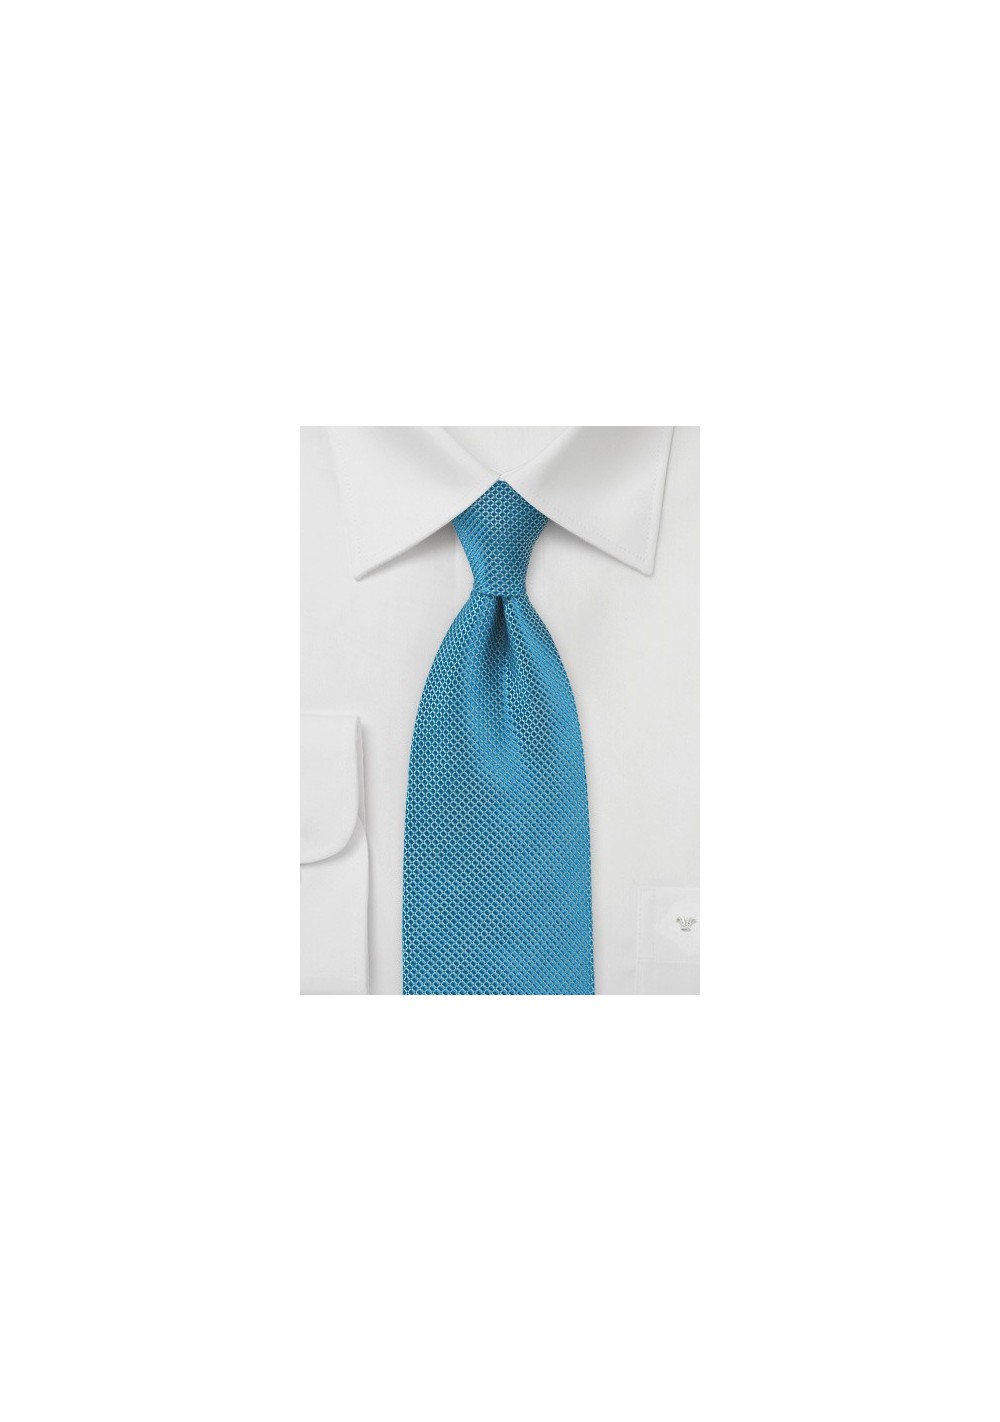 Pure Silk Tie in Blue Moon Color